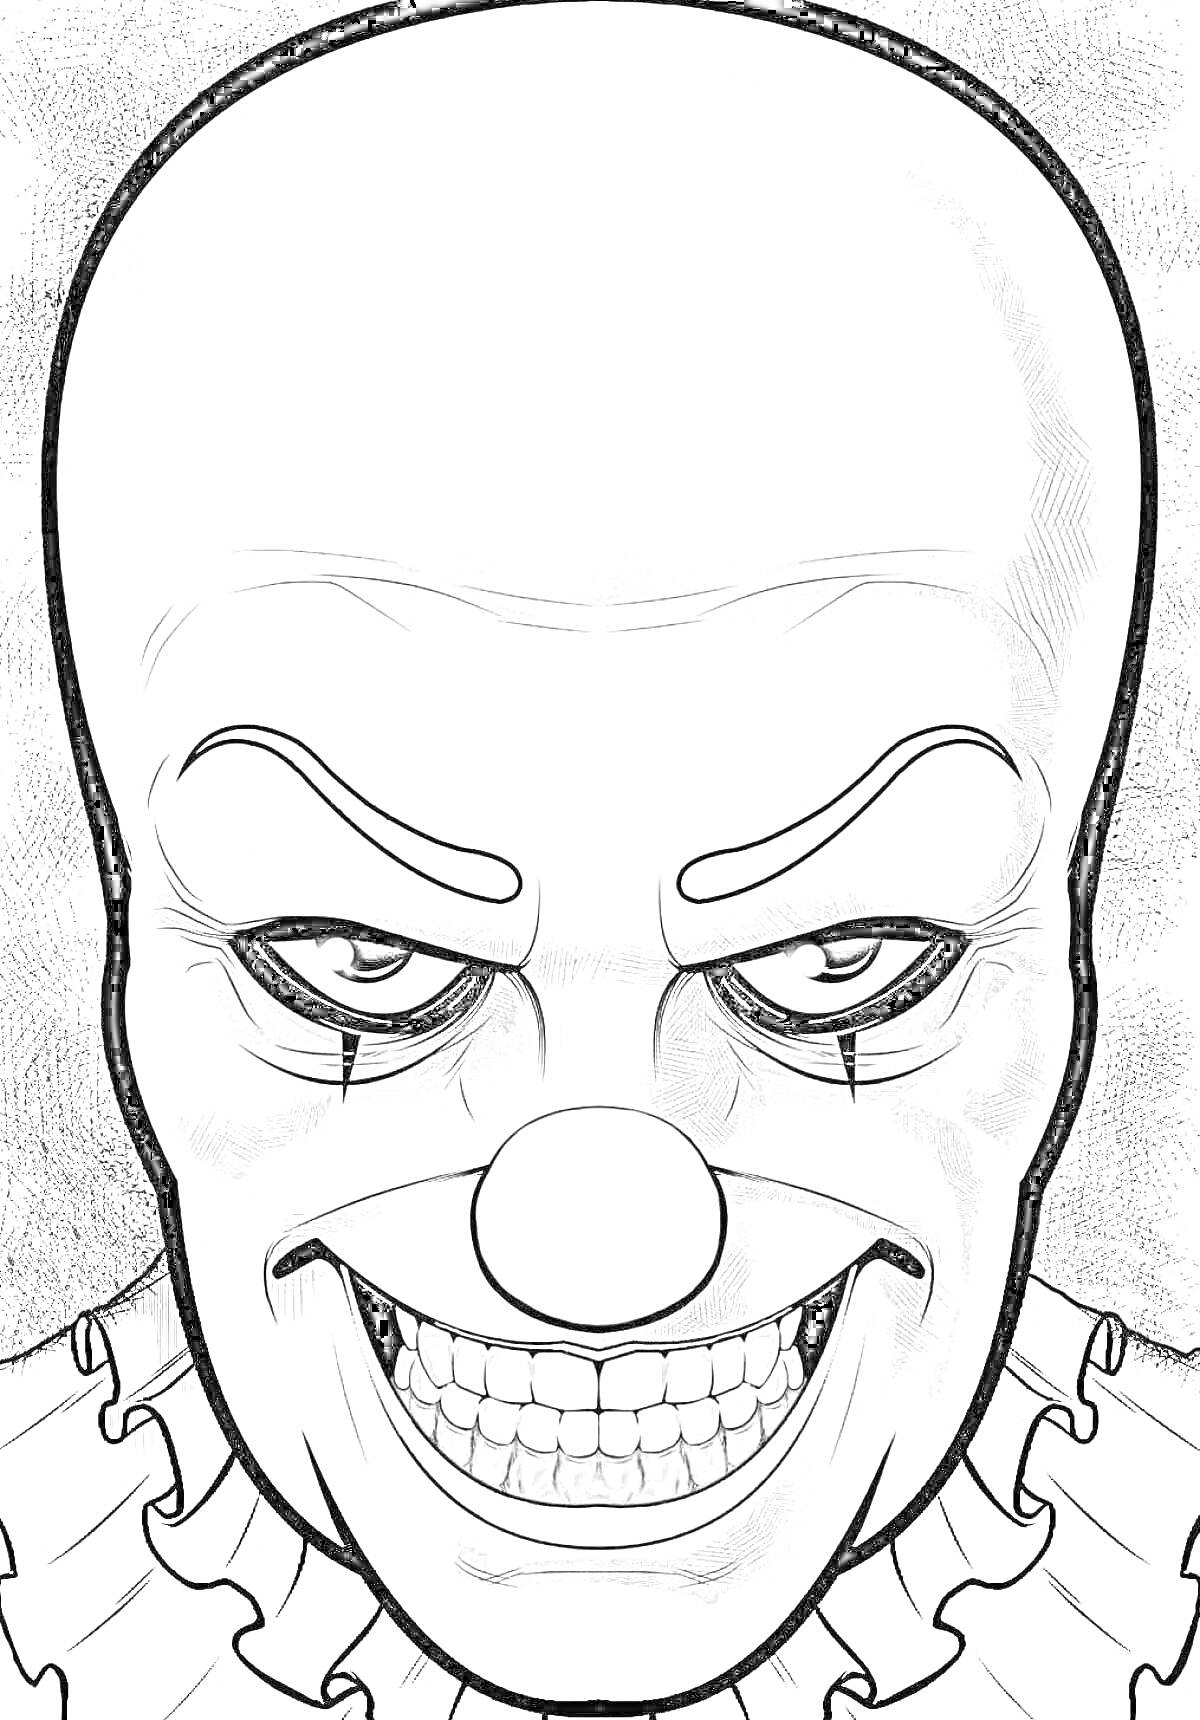 Раскраска Злобный клоун с большой лысой головой, гримом и широким оскалом, в воротнике с оборками